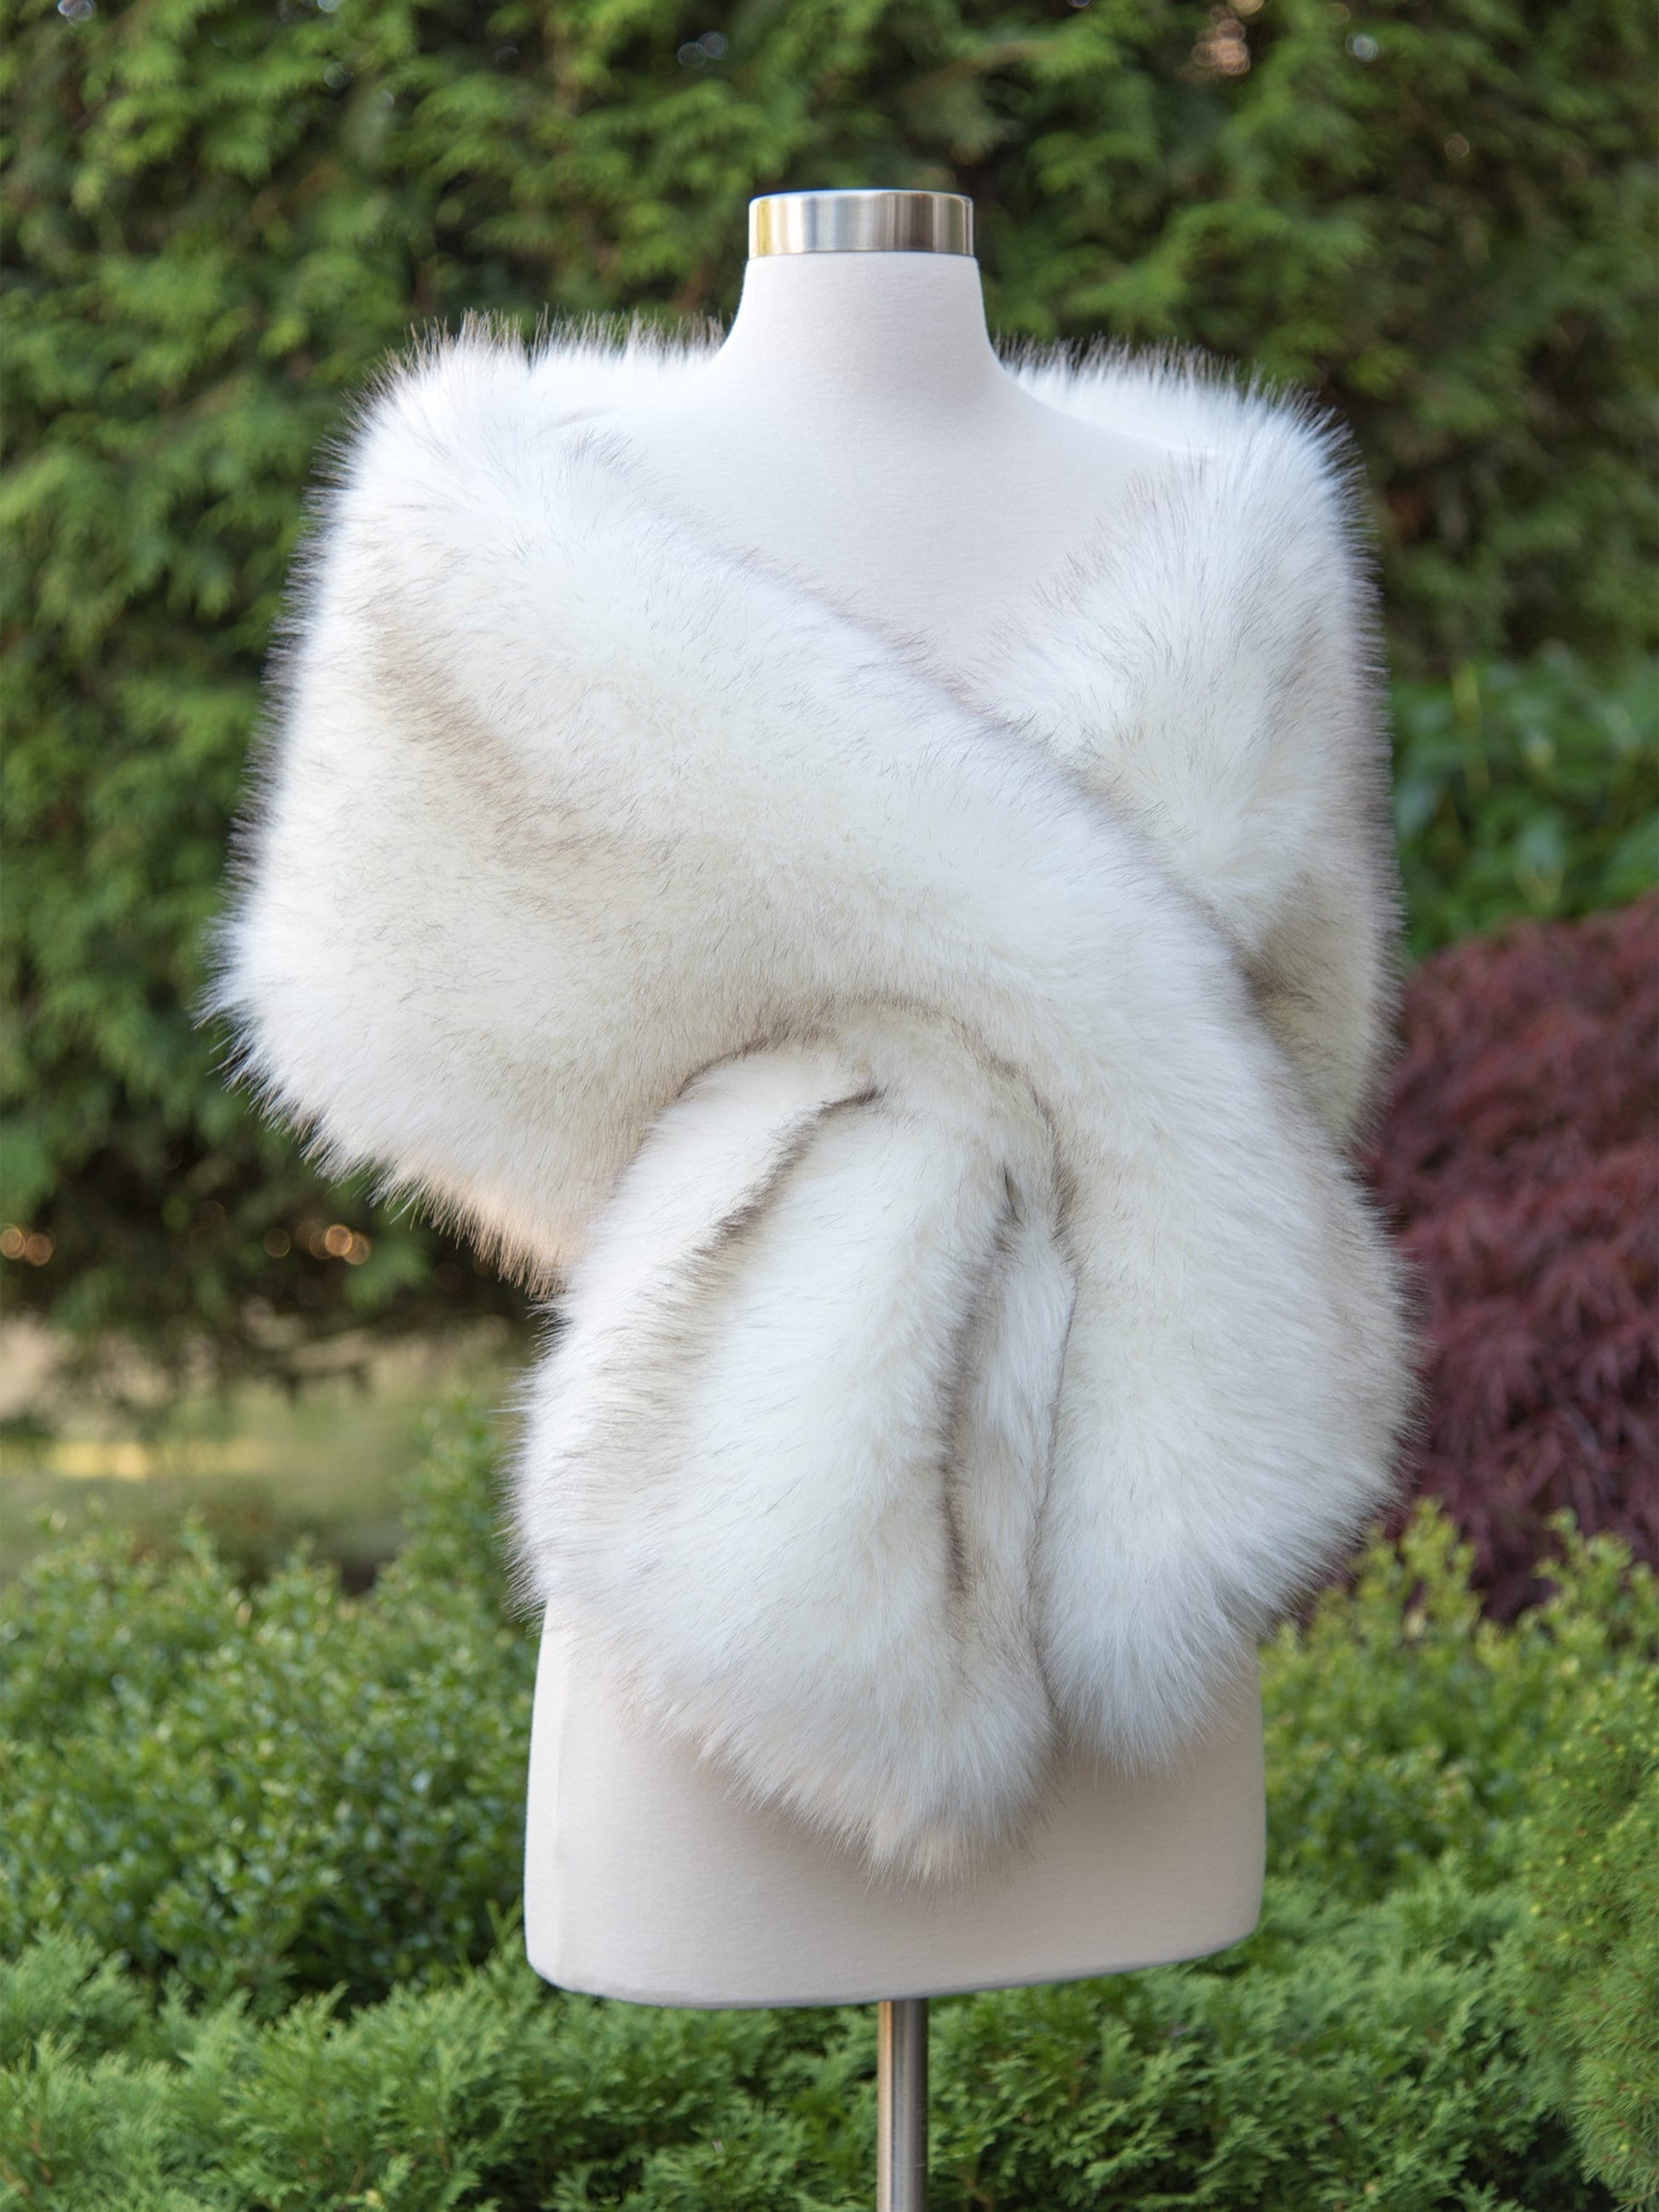 Ivory Faux Fur Bridal Wrap, Wedding Fur Shawl, Ivory Fur Wrap, Bridal Faux Fur Stole, Wedding Cape B005-Ivory